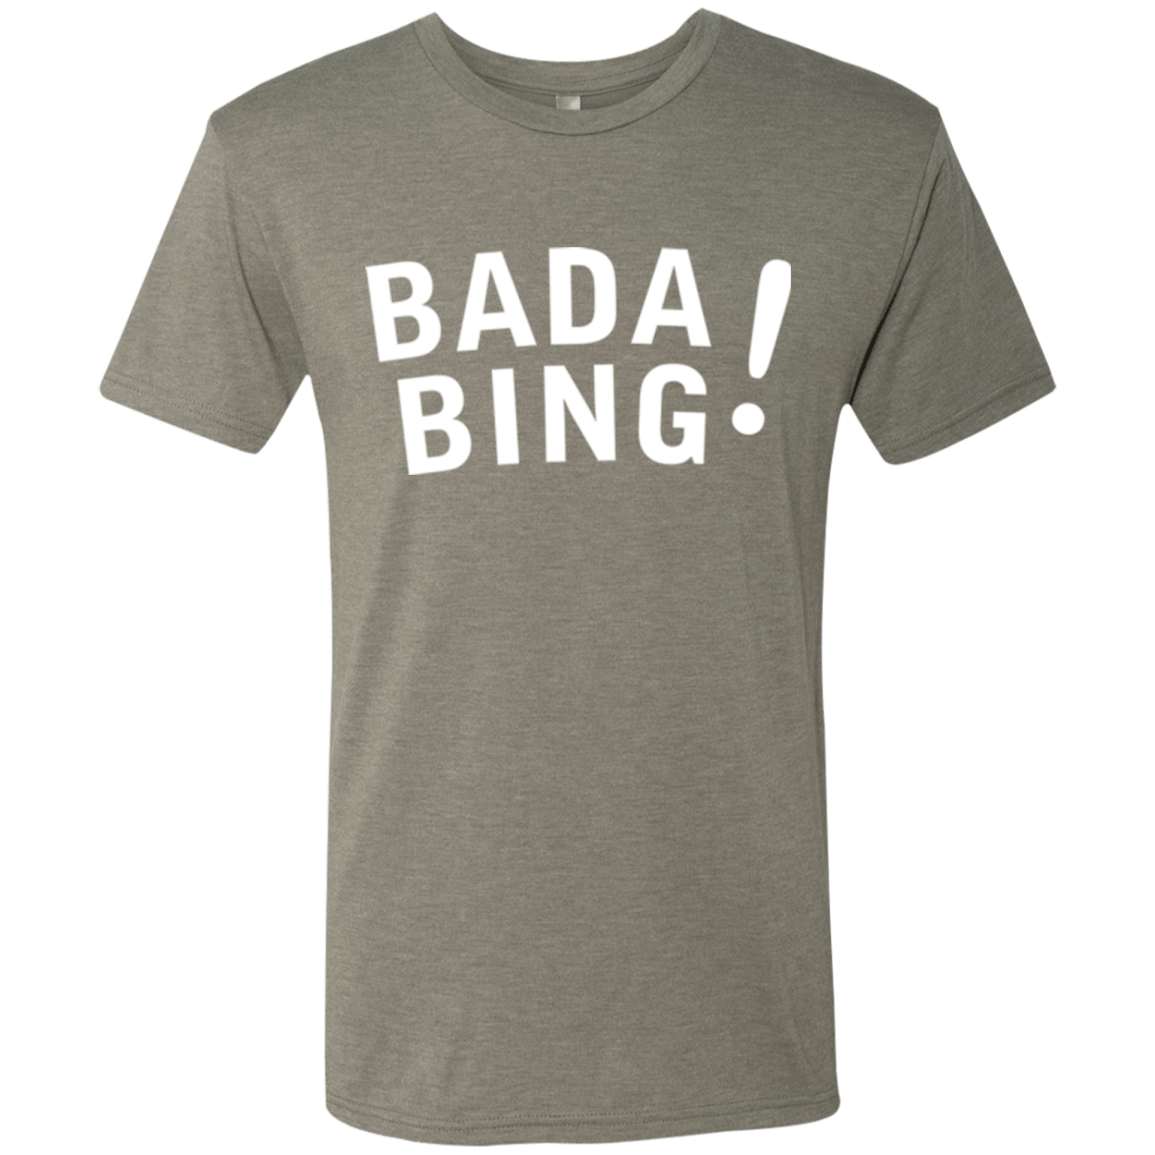 T-Shirts Venetian Grey / Small Bada bing Men's Triblend T-Shirt